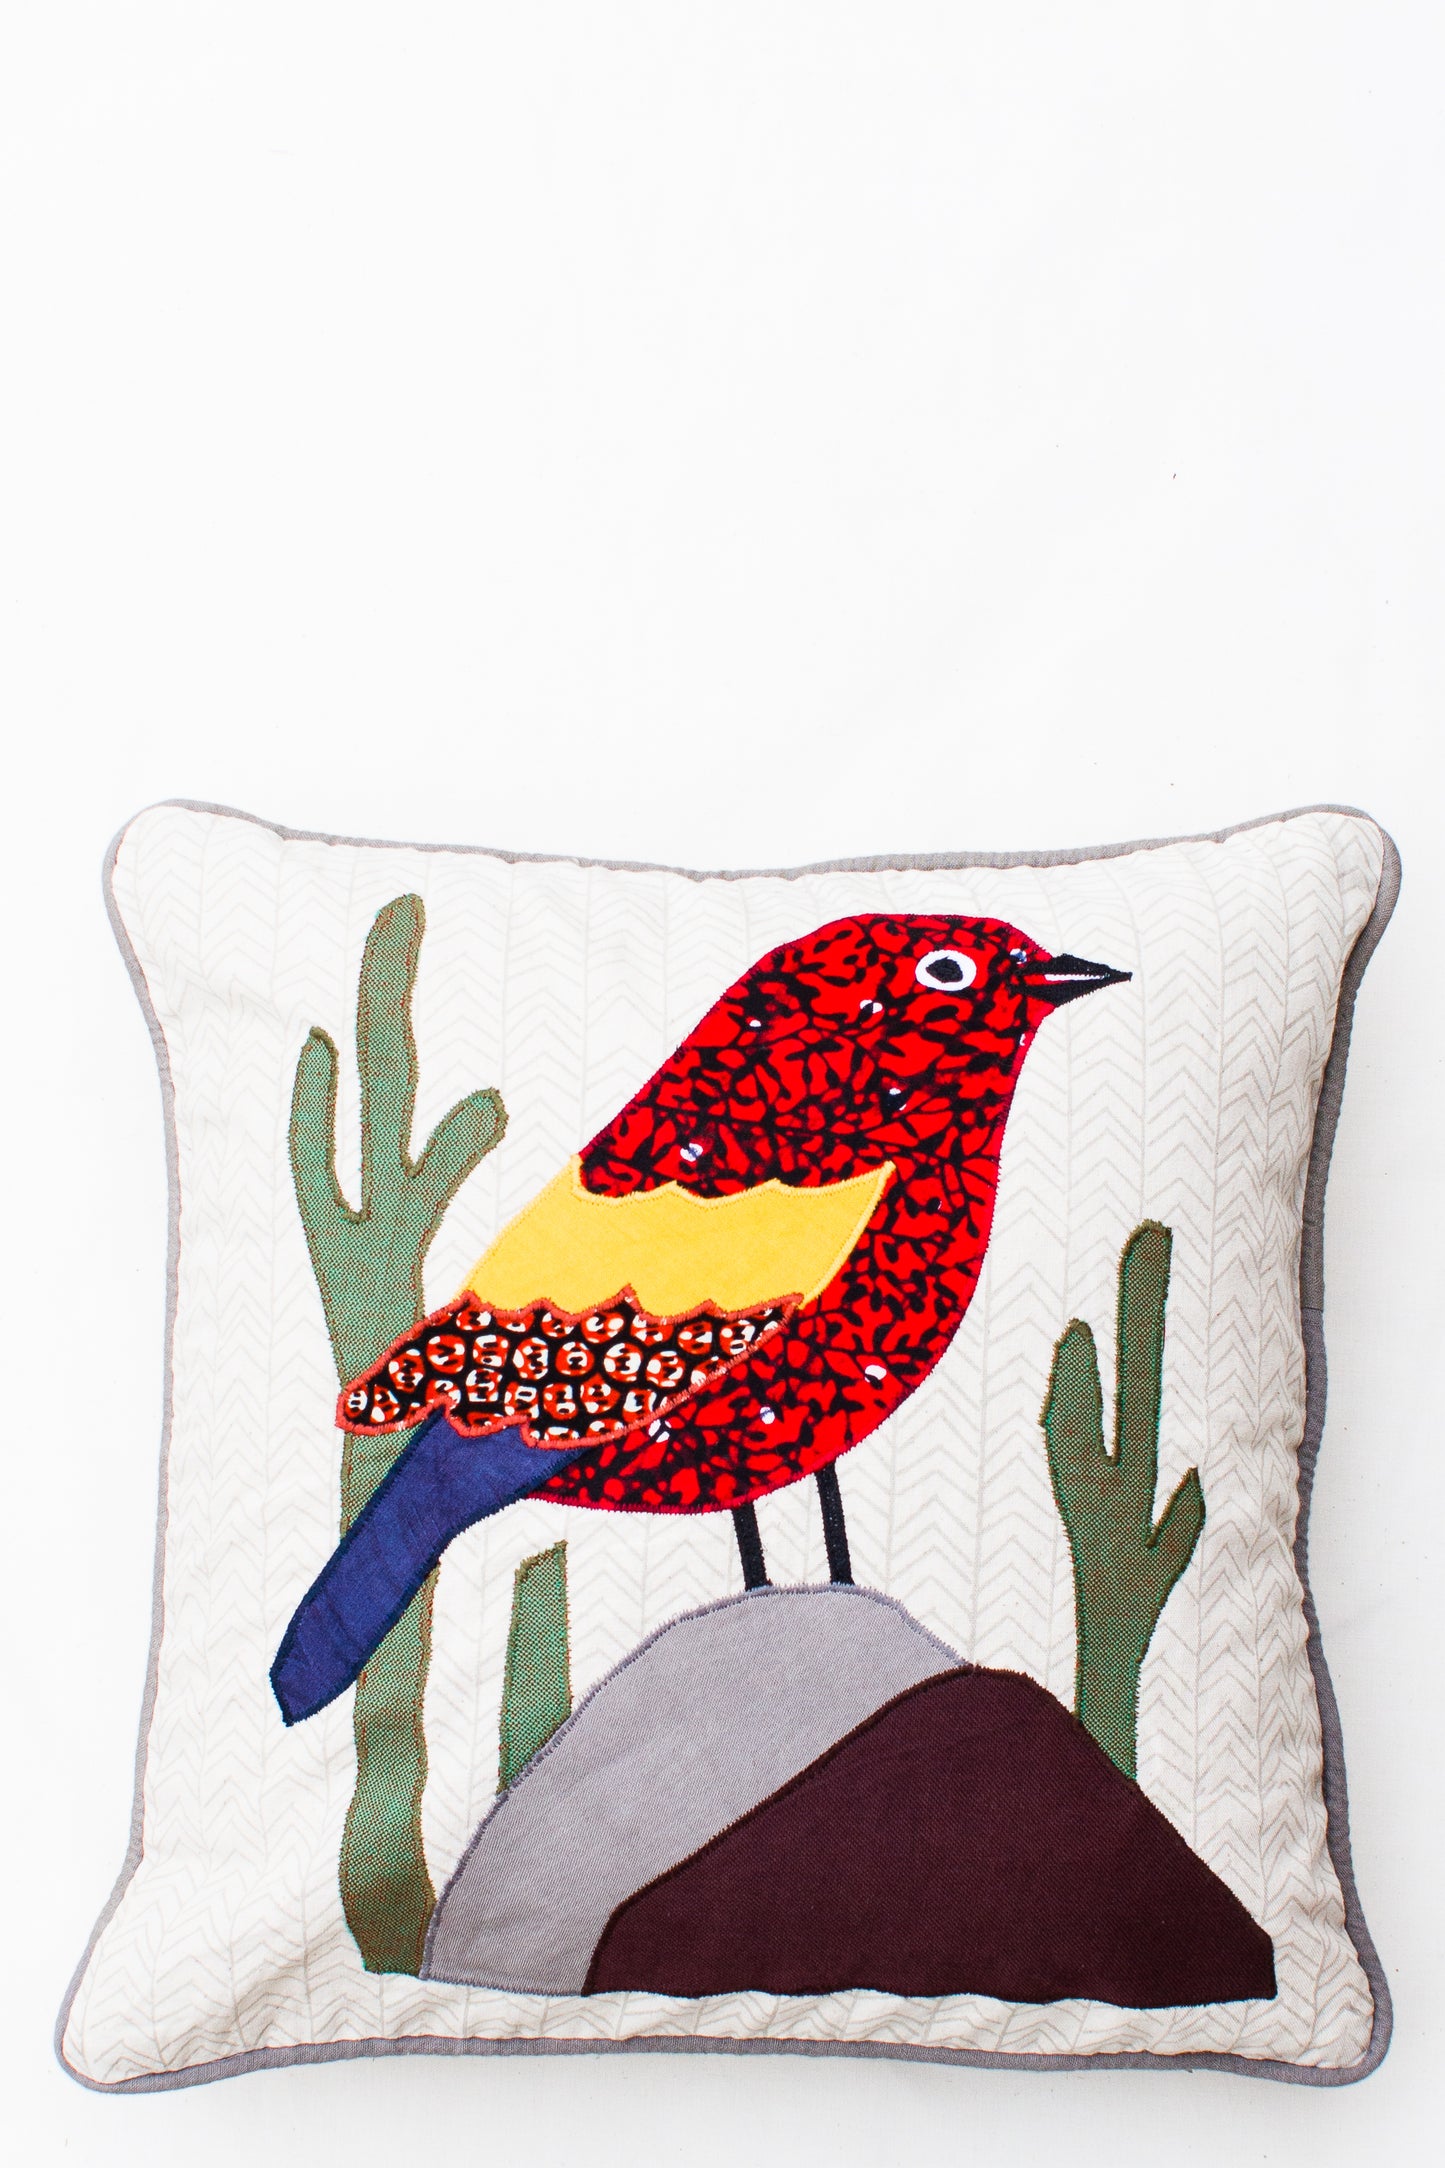 Bird with Cactus Pillow